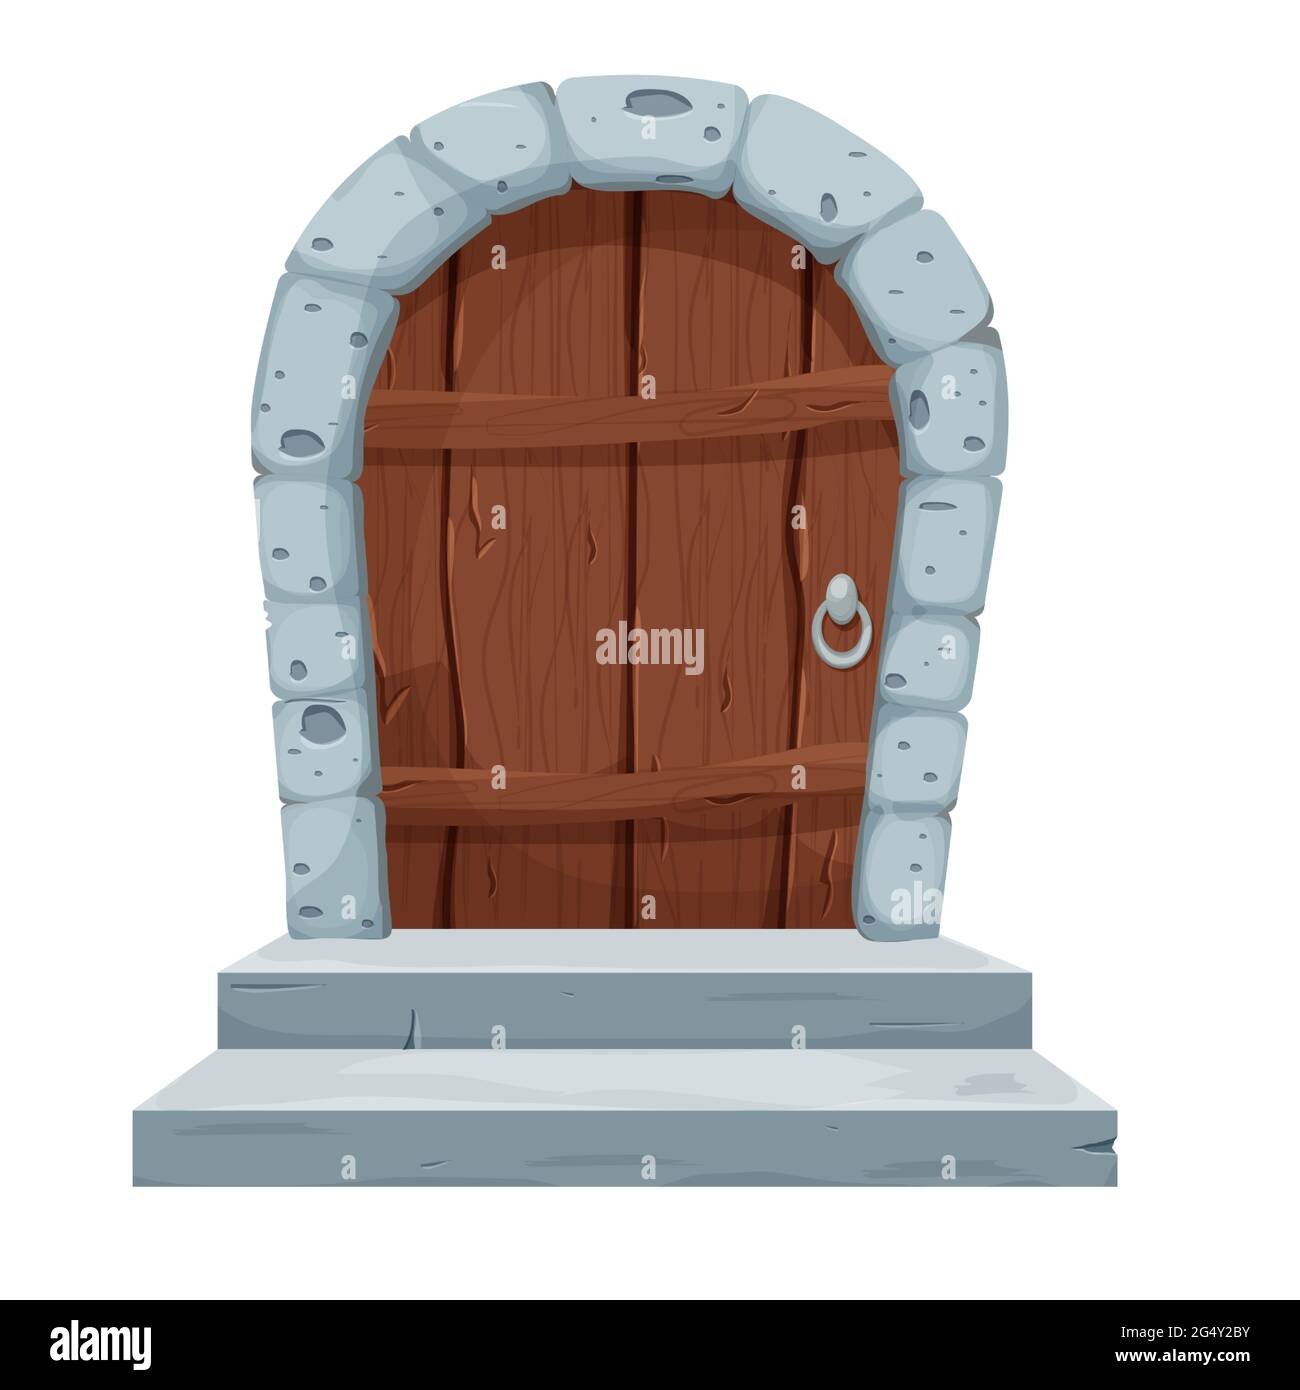 Steinbogen mit Holztür, Burgtor im Cartoon-Stil isoliert auf weißem Hintergrund. Alter, mittelalterlicher Eingang. UI-Asset, strukturiertes, detailliertes Objekt. Vektorgrafik Stock Vektor